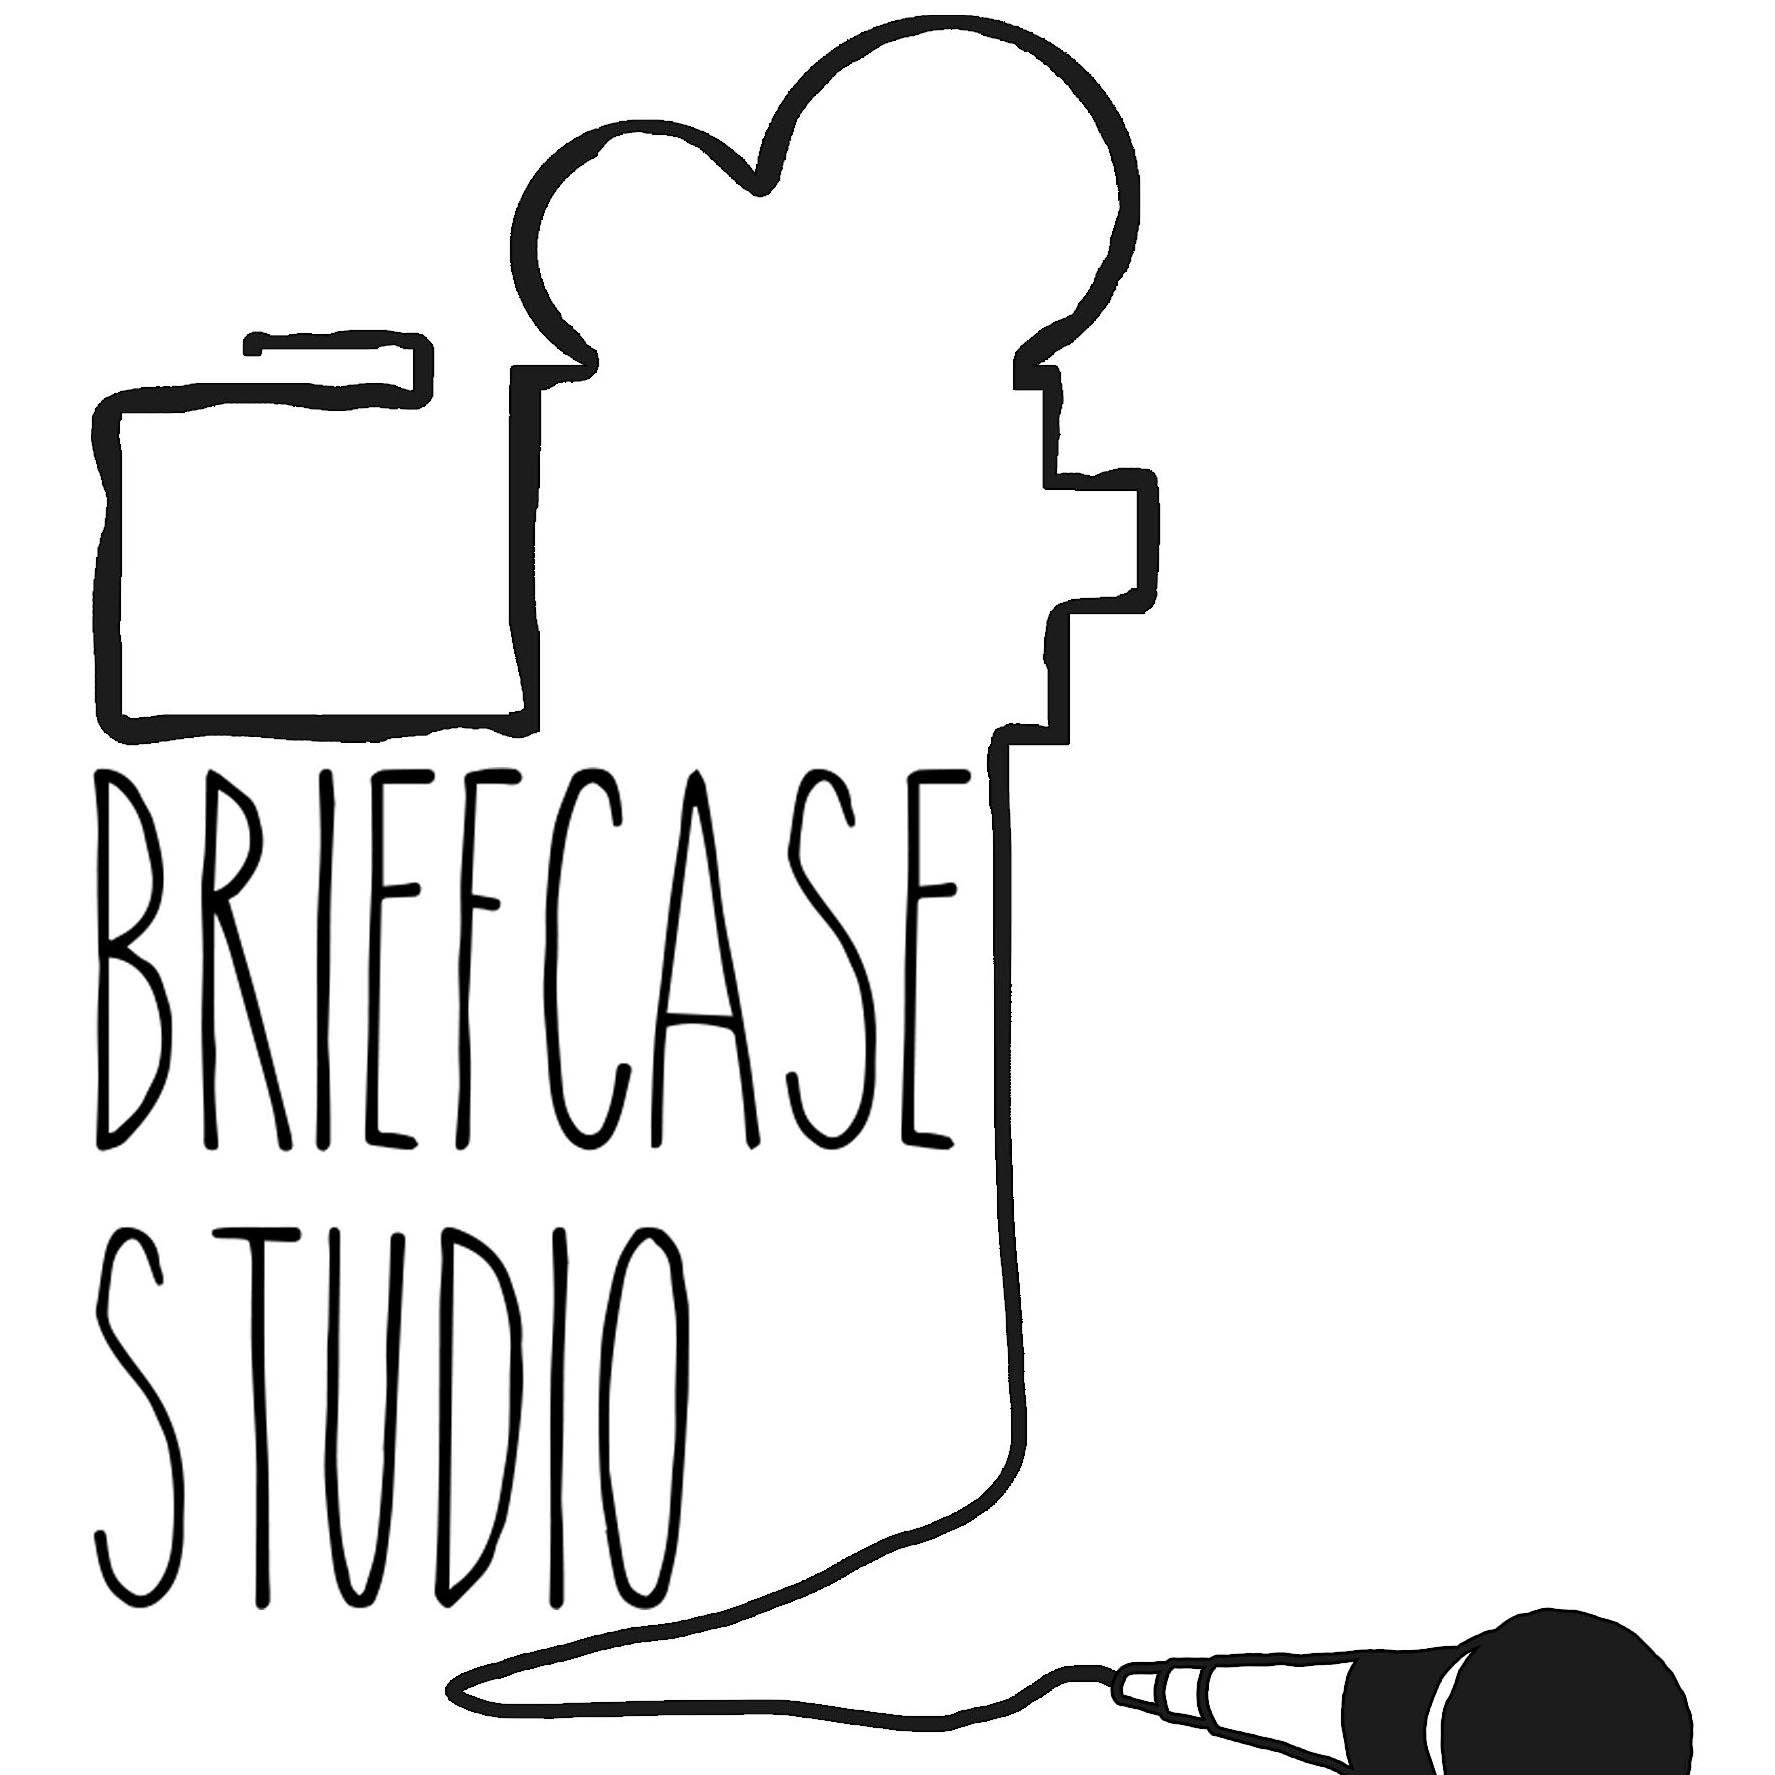 Briefcase Studios